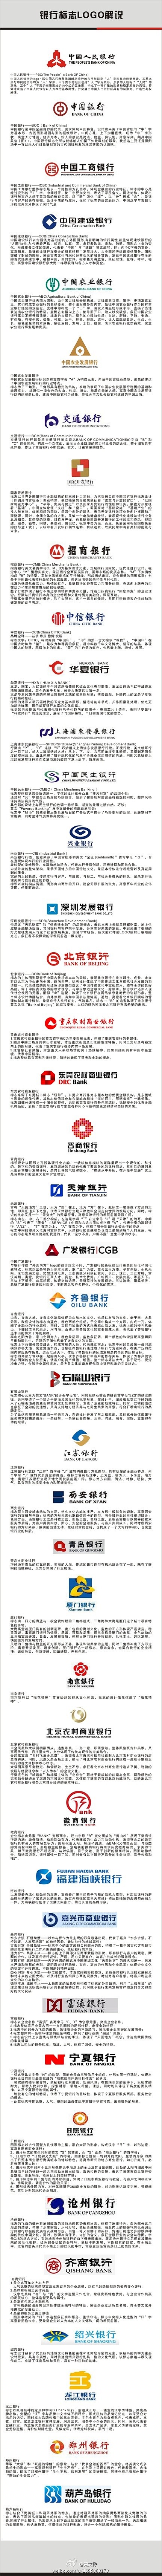 银行logo解析